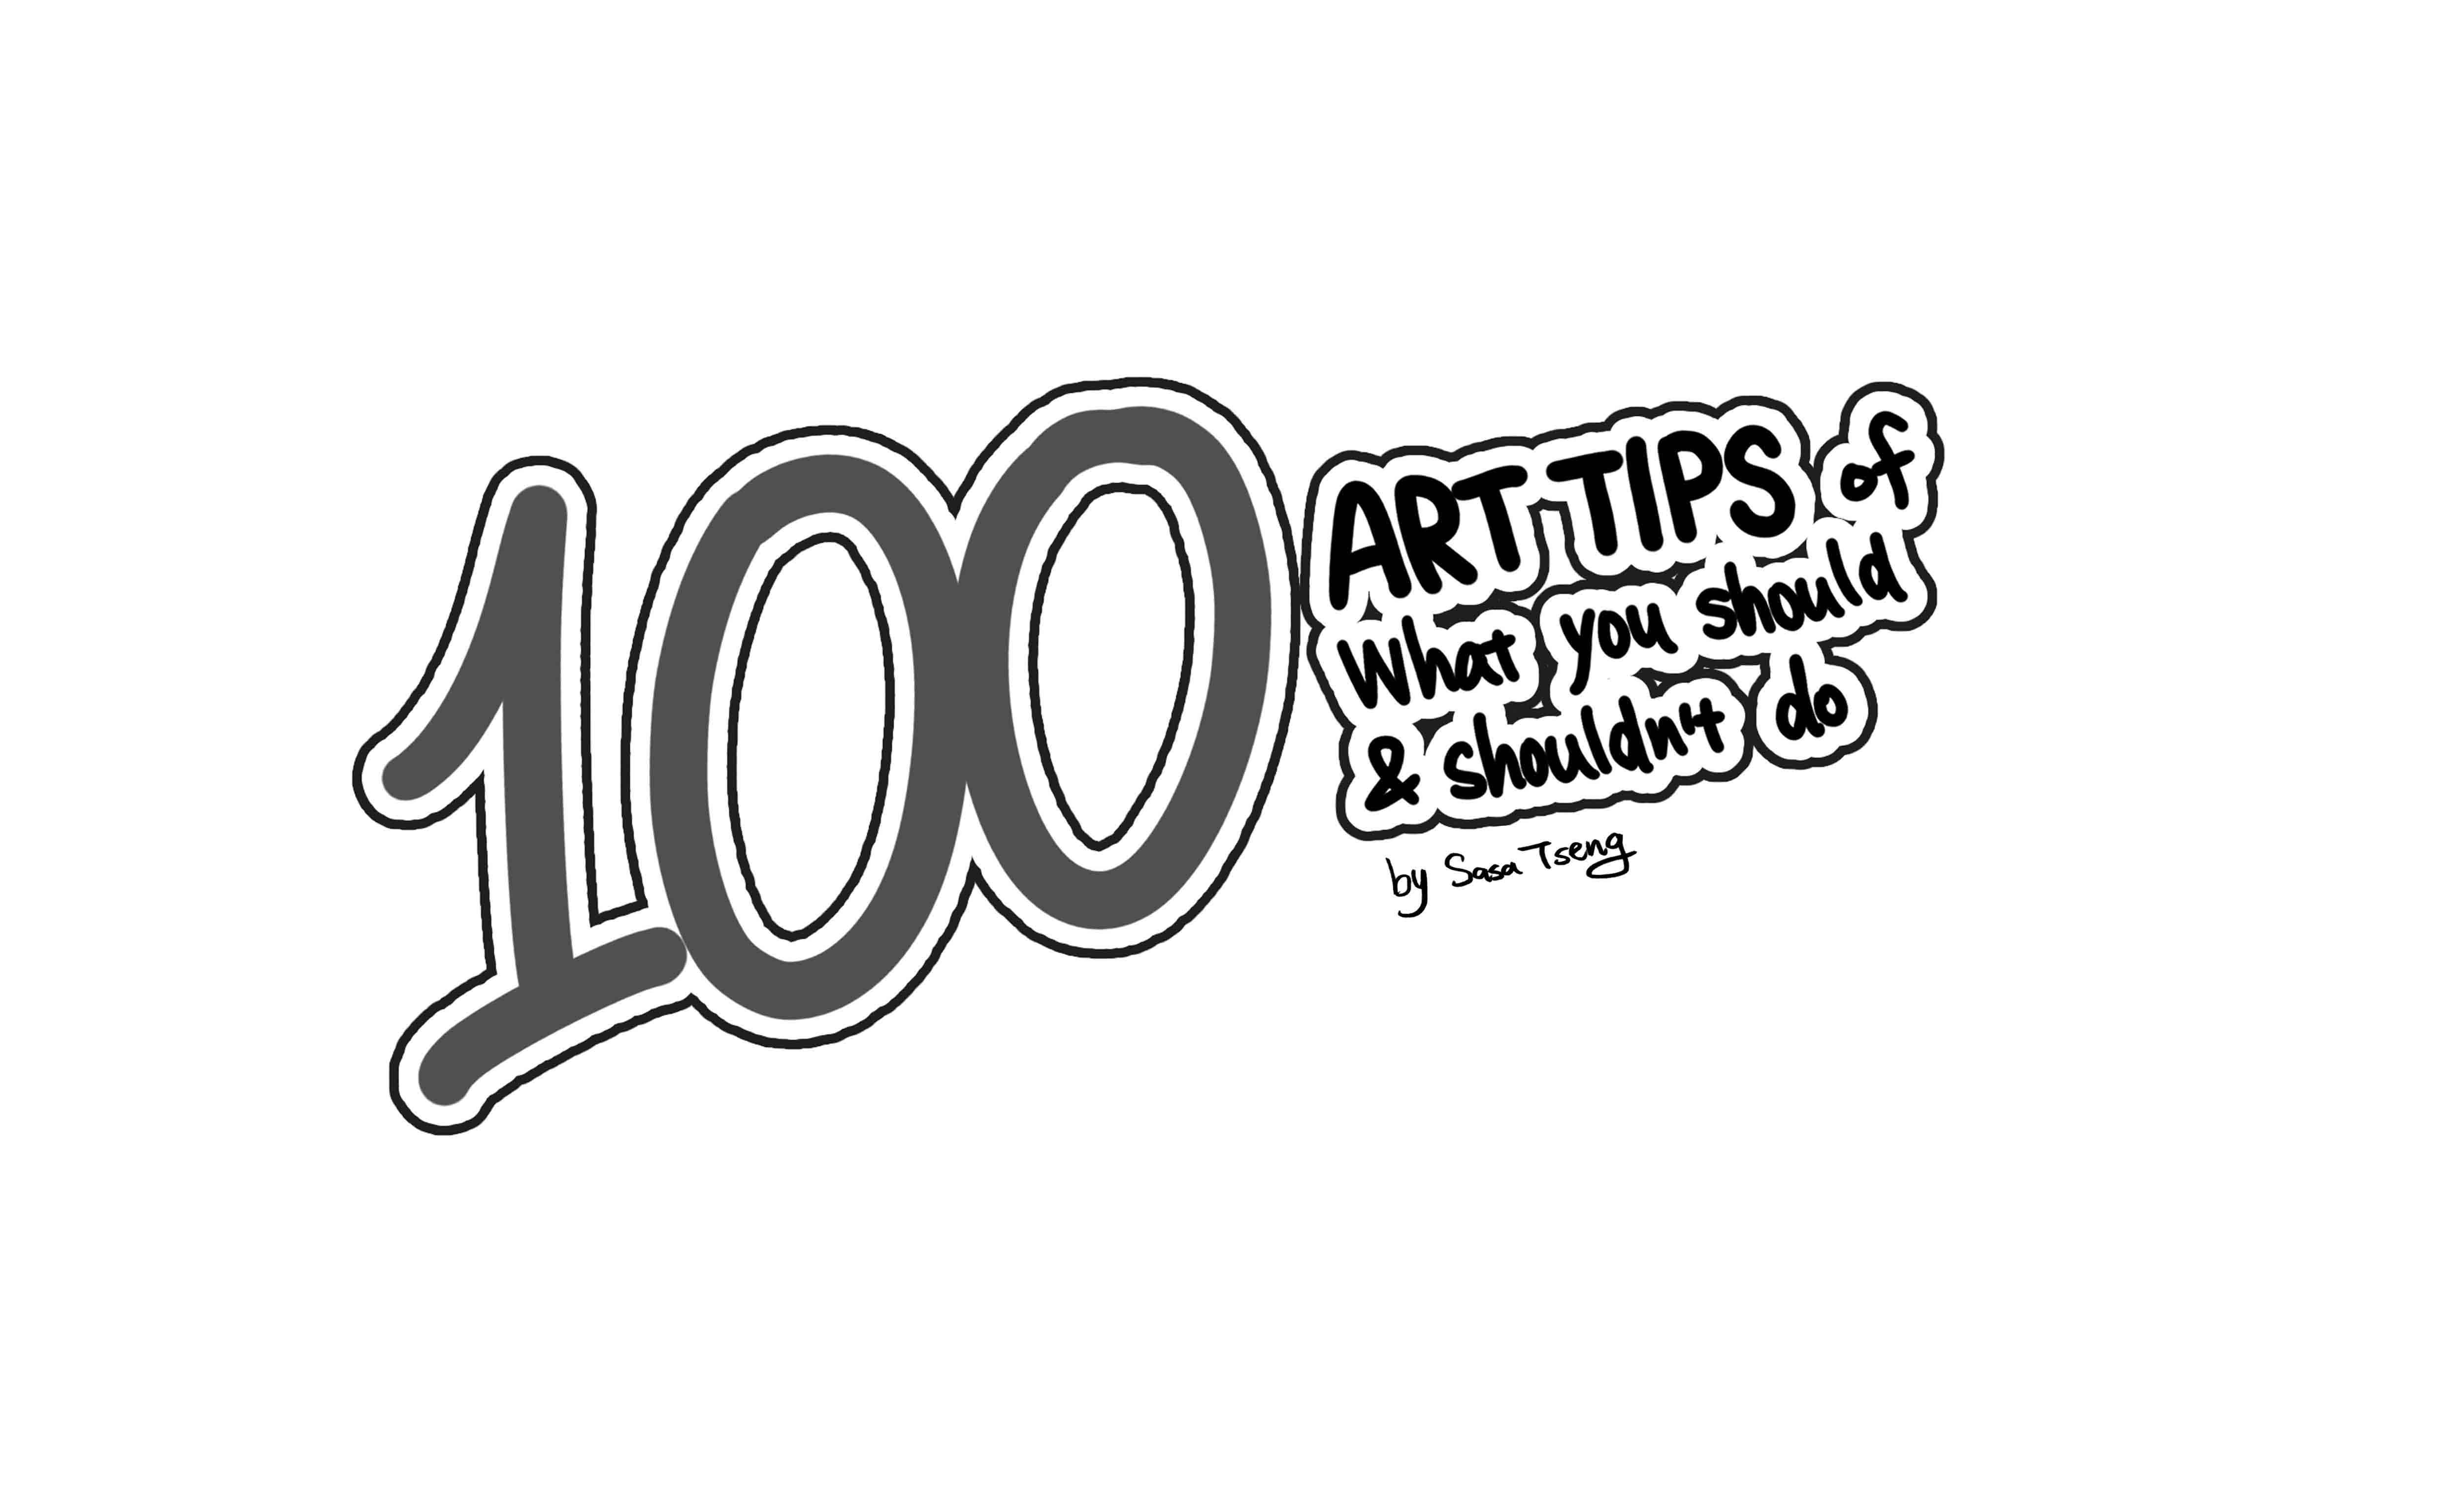 Sasa's 100 Art Tips- 1